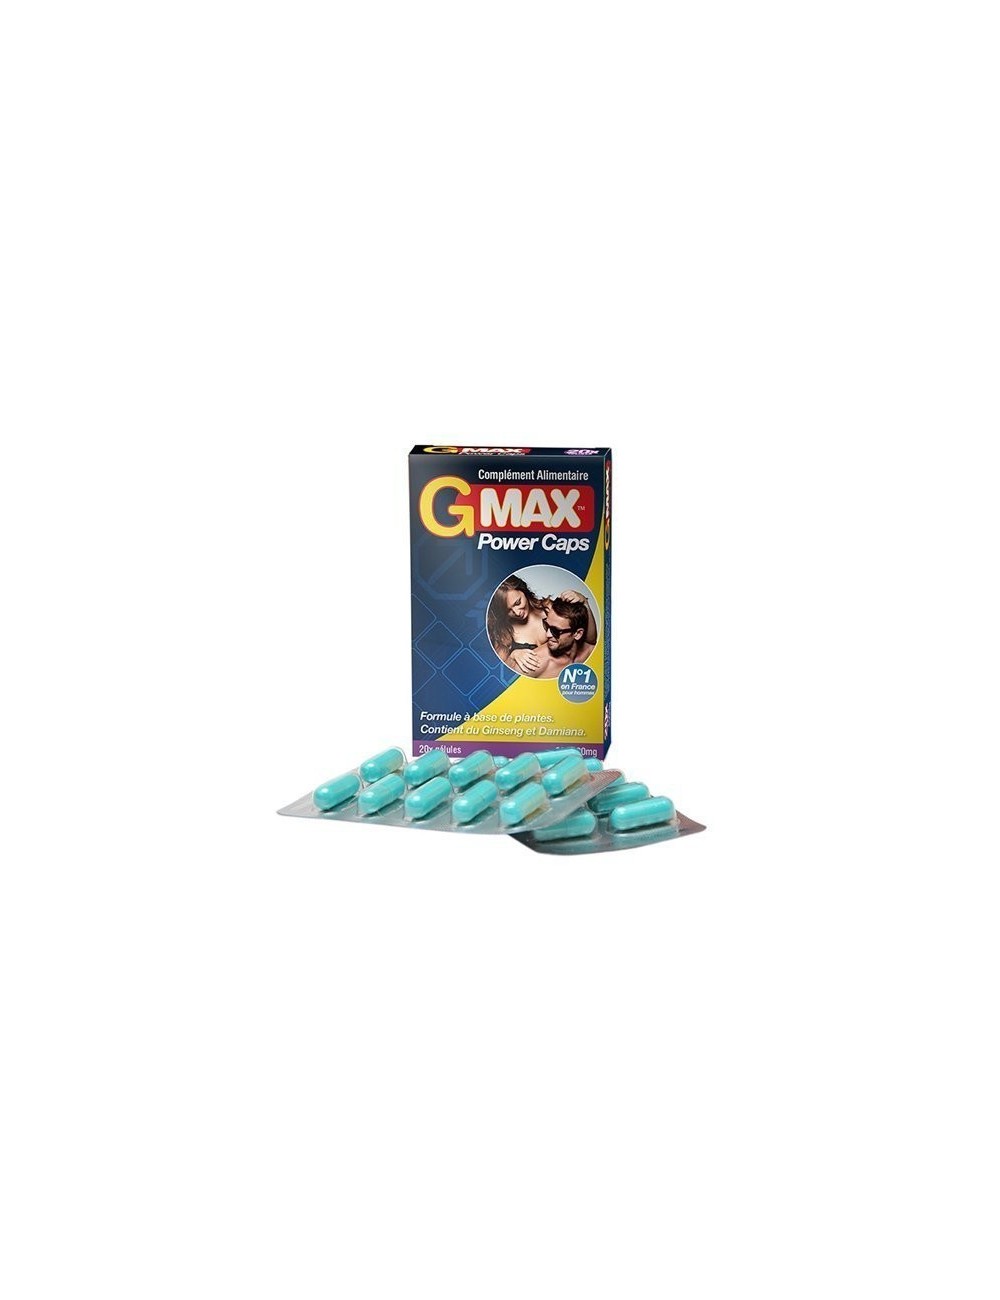 G-max power Caps pour homme 20 gélule complément alimentaire - Aphrodisiaques - Gmax